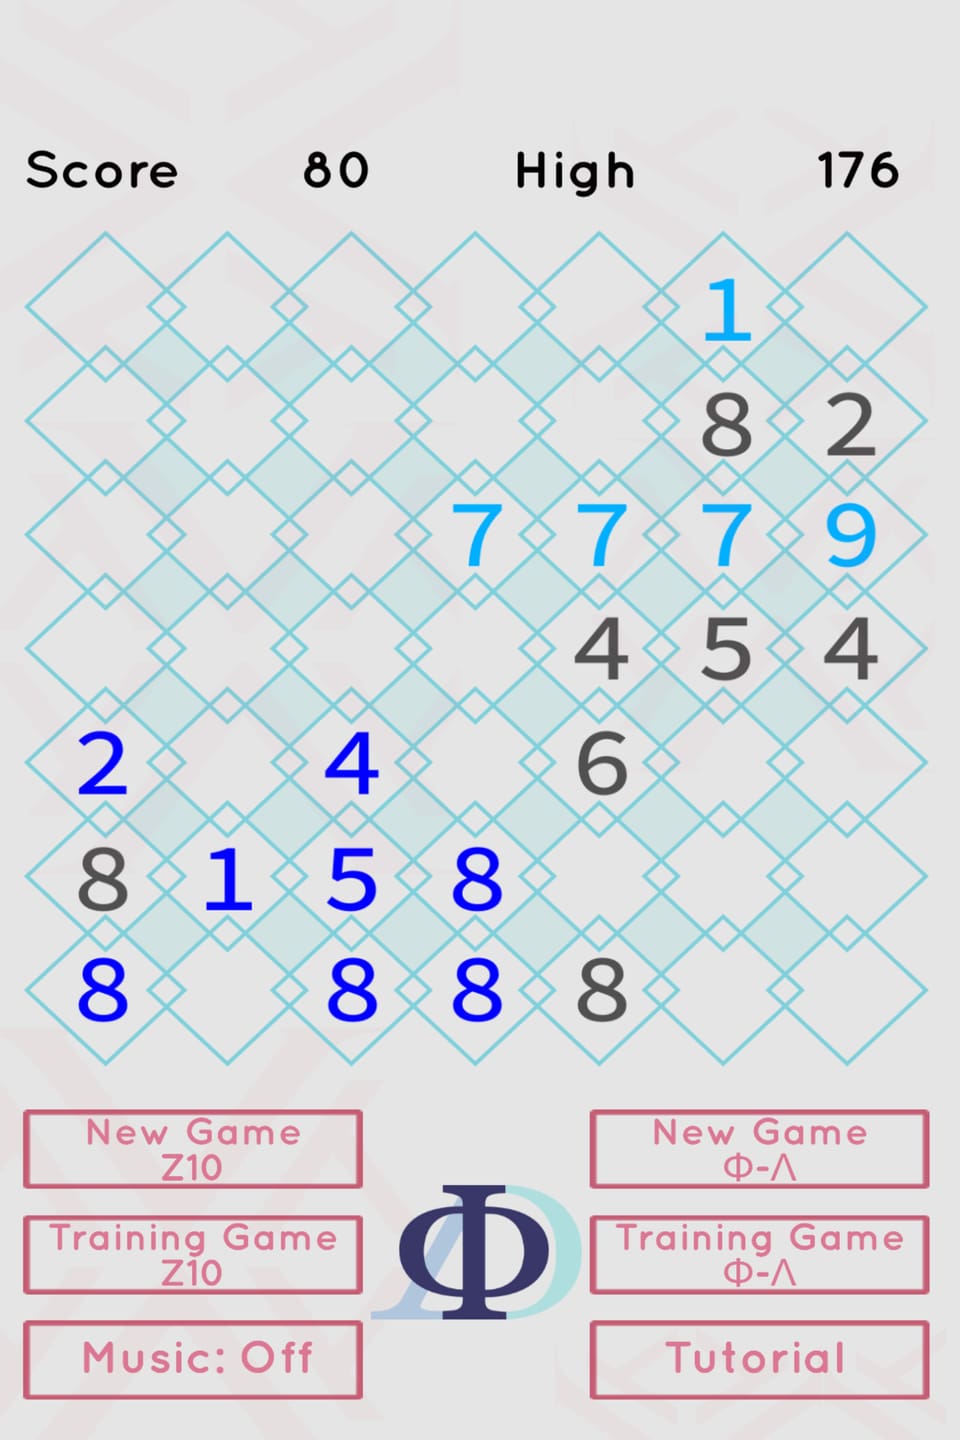 Und noch einmal: Hellblau 7+7+7+9+1=31 (9 fehlen --> bzw. 5+4 kommen zur Gruppe dazu), Dunkelblau 8+8+8+8+5+1+2+4=44 (6 fehlen --> bzw. 8+8=16 kommen zur Gruppe dazu). 